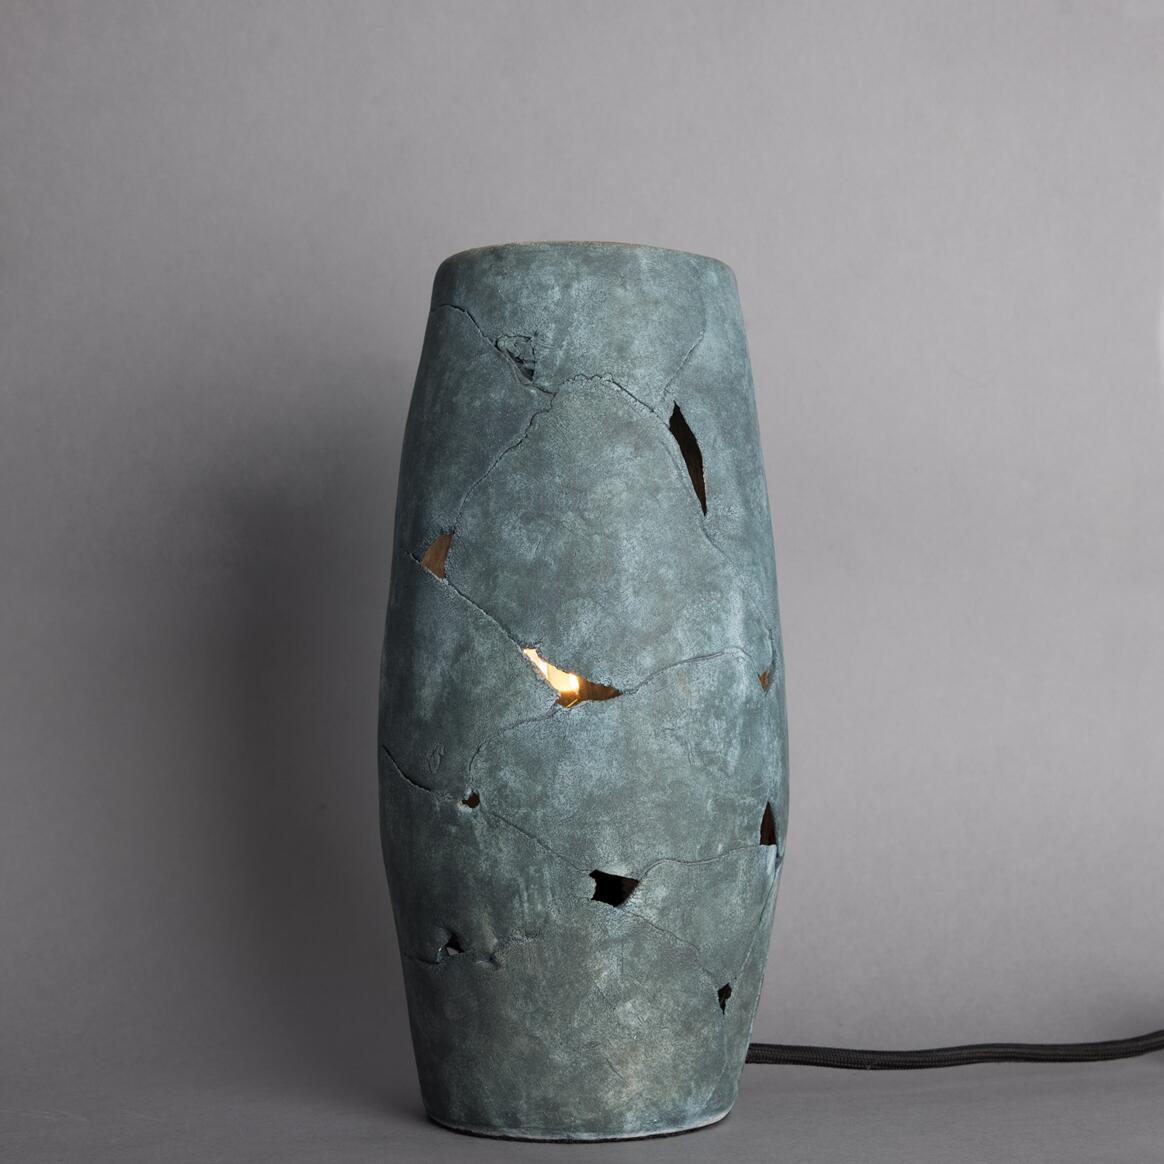 Carya Ceramic Table Lamp Rustic Luminaire, Blue Earth main product image